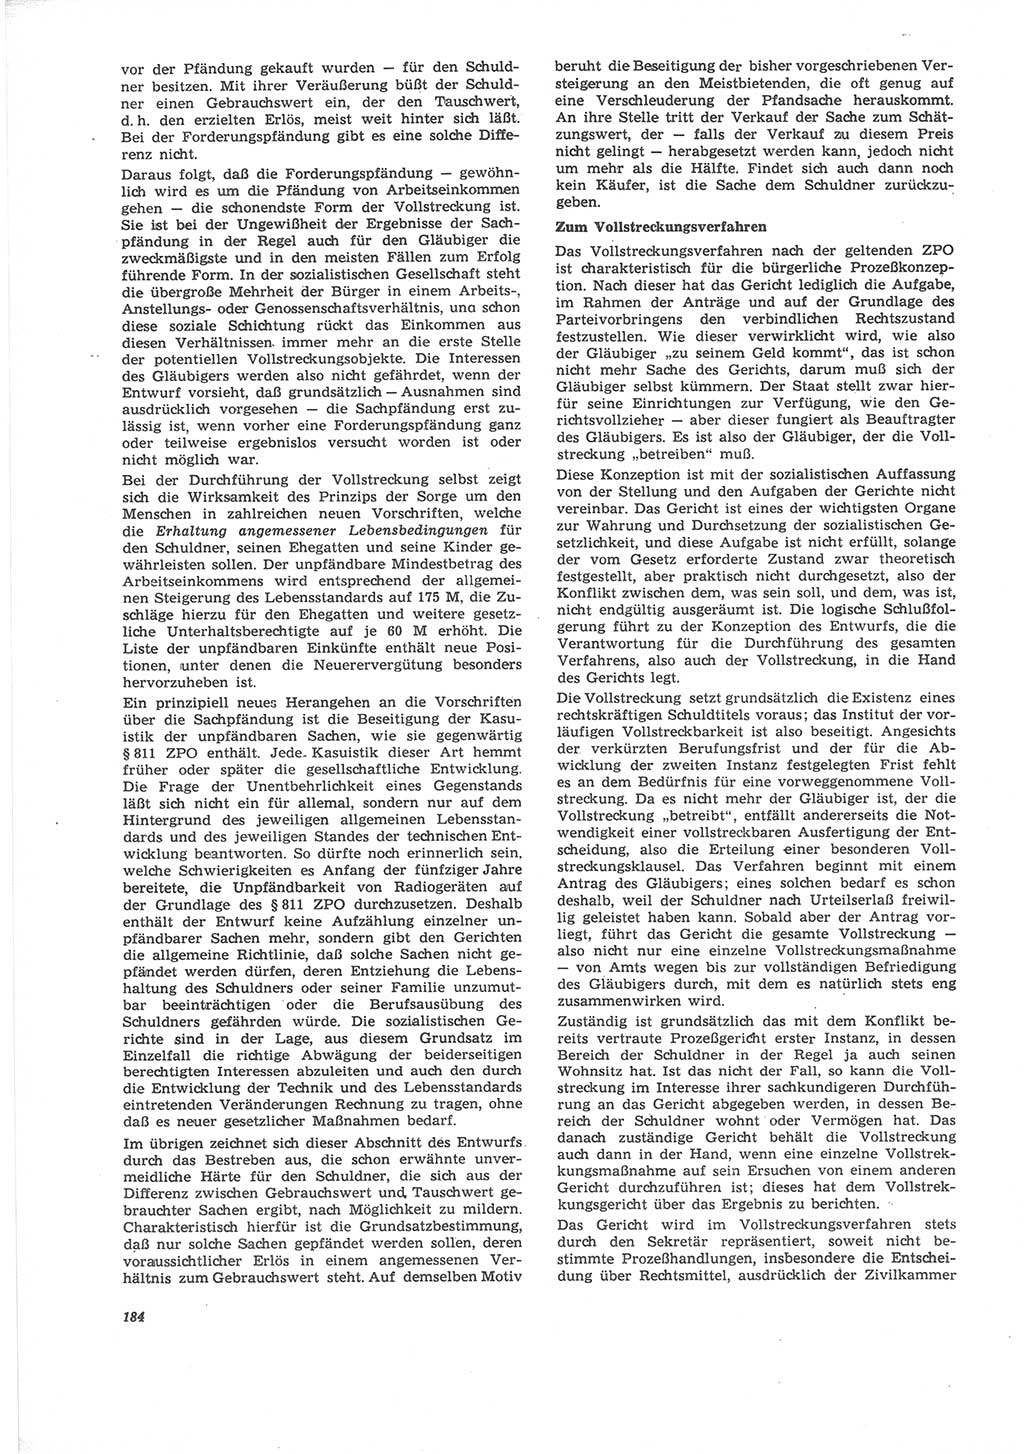 Neue Justiz (NJ), Zeitschrift für Recht und Rechtswissenschaft [Deutsche Demokratische Republik (DDR)], 24. Jahrgang 1970, Seite 184 (NJ DDR 1970, S. 184)